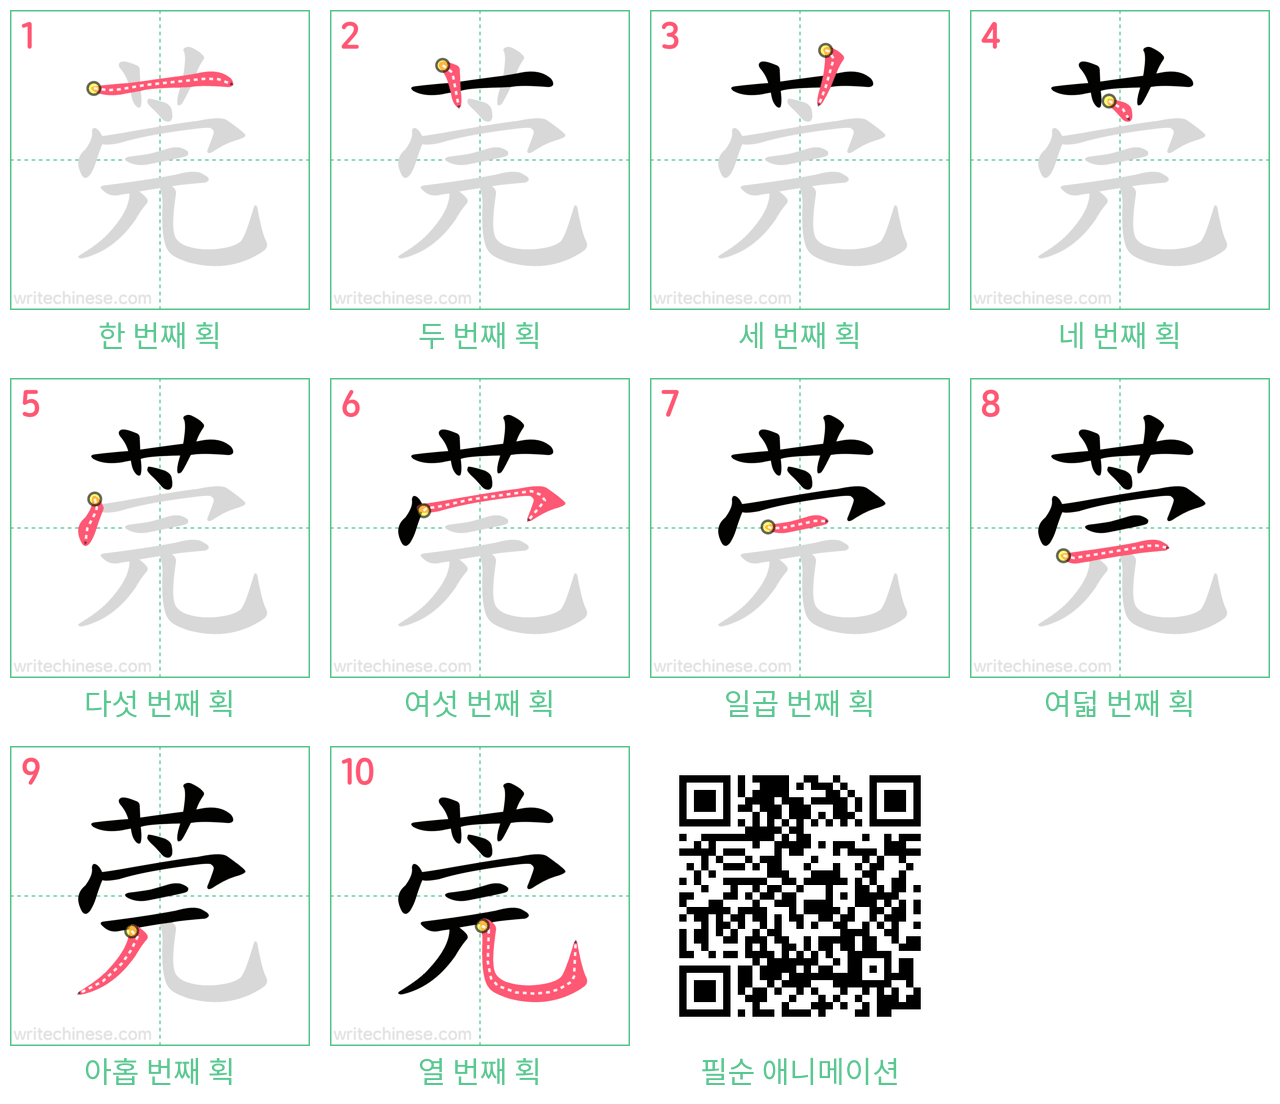 莞 step-by-step stroke order diagrams